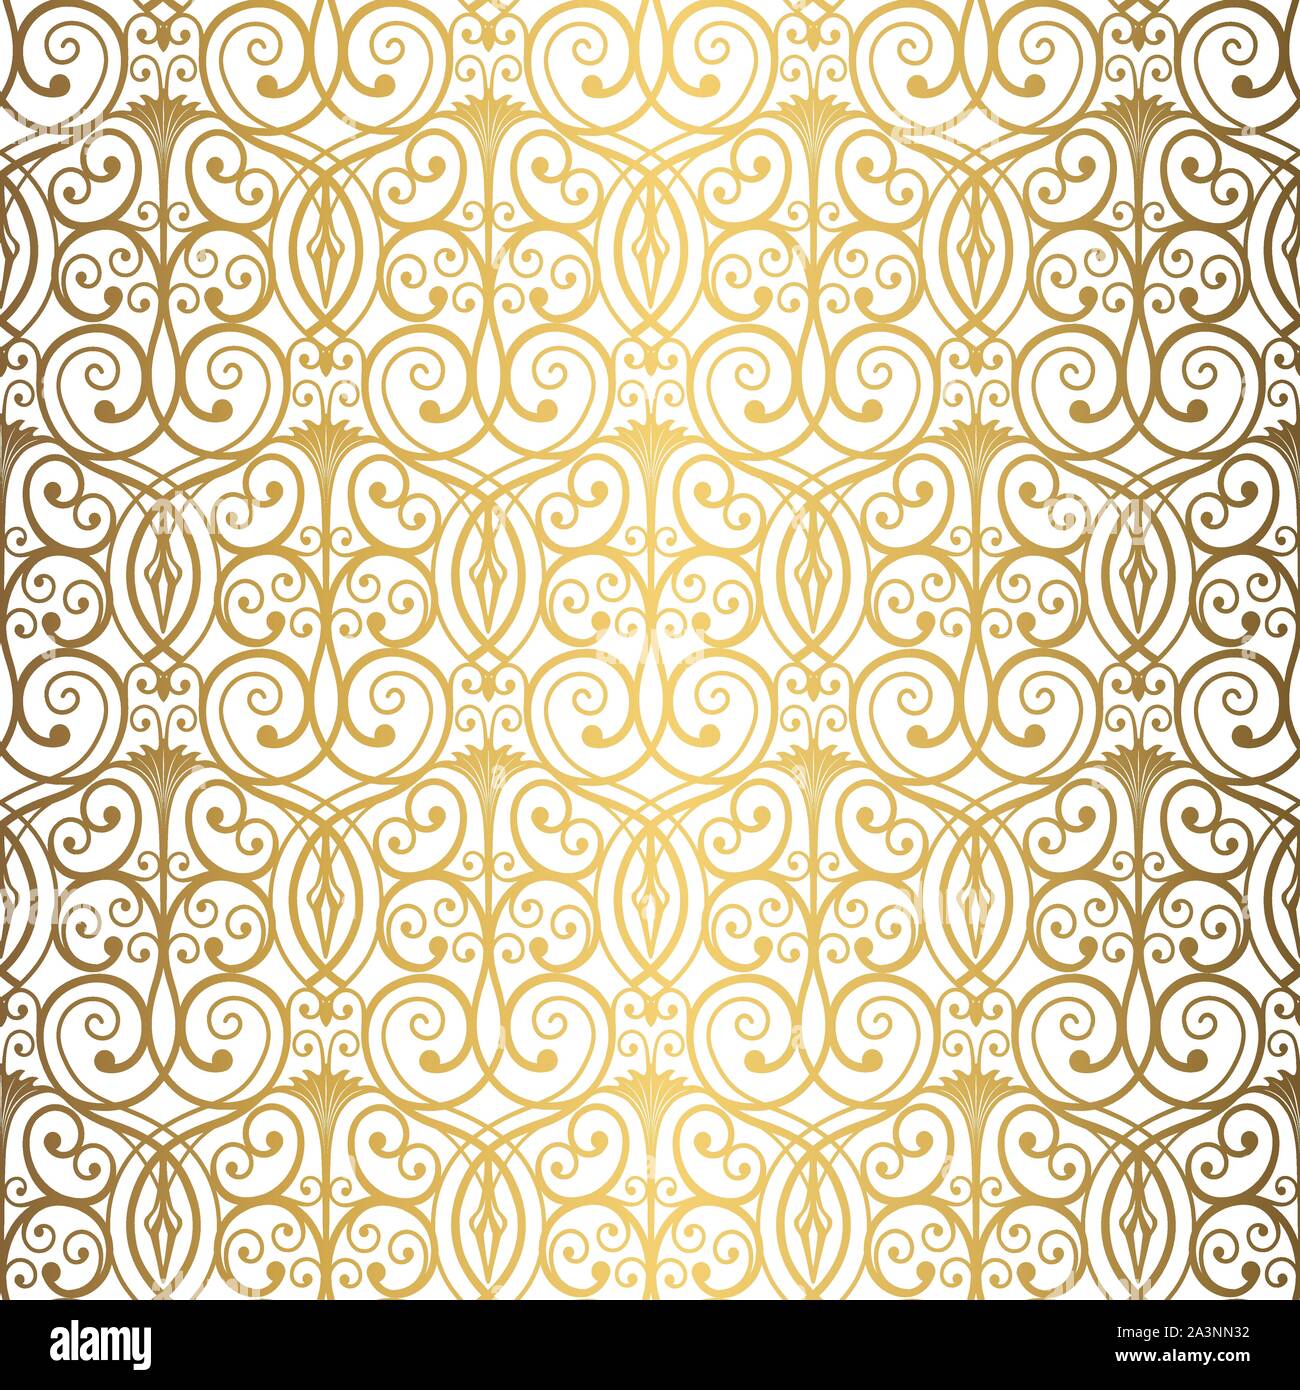 Goldener Hintergrund. Luxus nahtlose Muster. Elegante Webart Ornament für Tapeten, Stoff, Polstermöbel, Bettwaren, Vorhänge, einladung hochzeit. Abstrakte f Stock Vektor